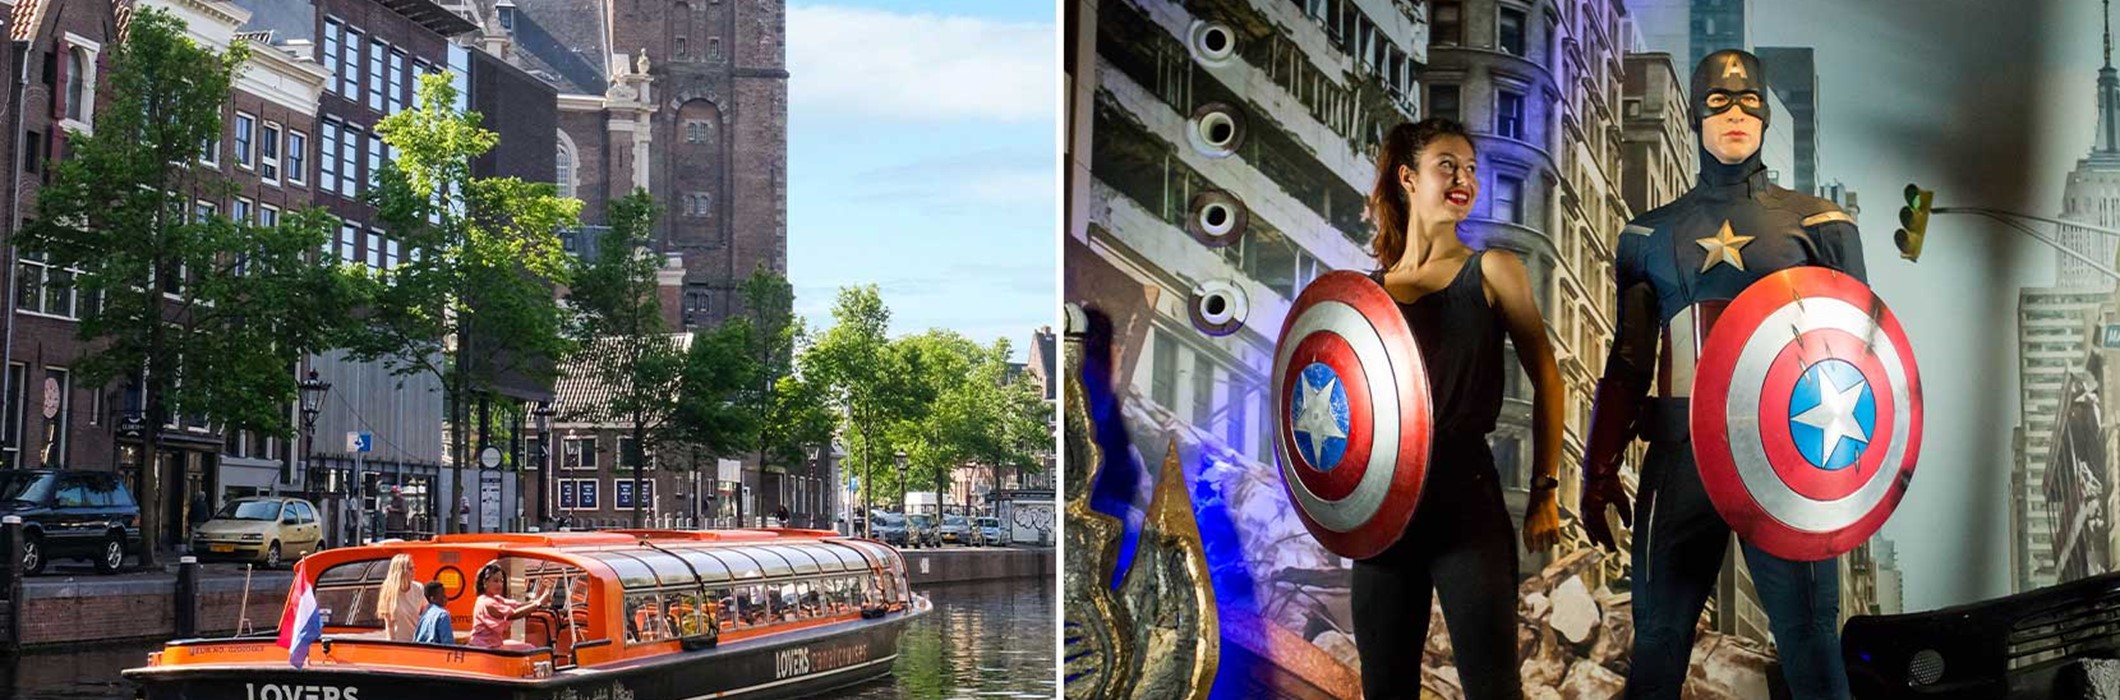 Madame Tussauds + Crucero por los canales de Ámsterdam